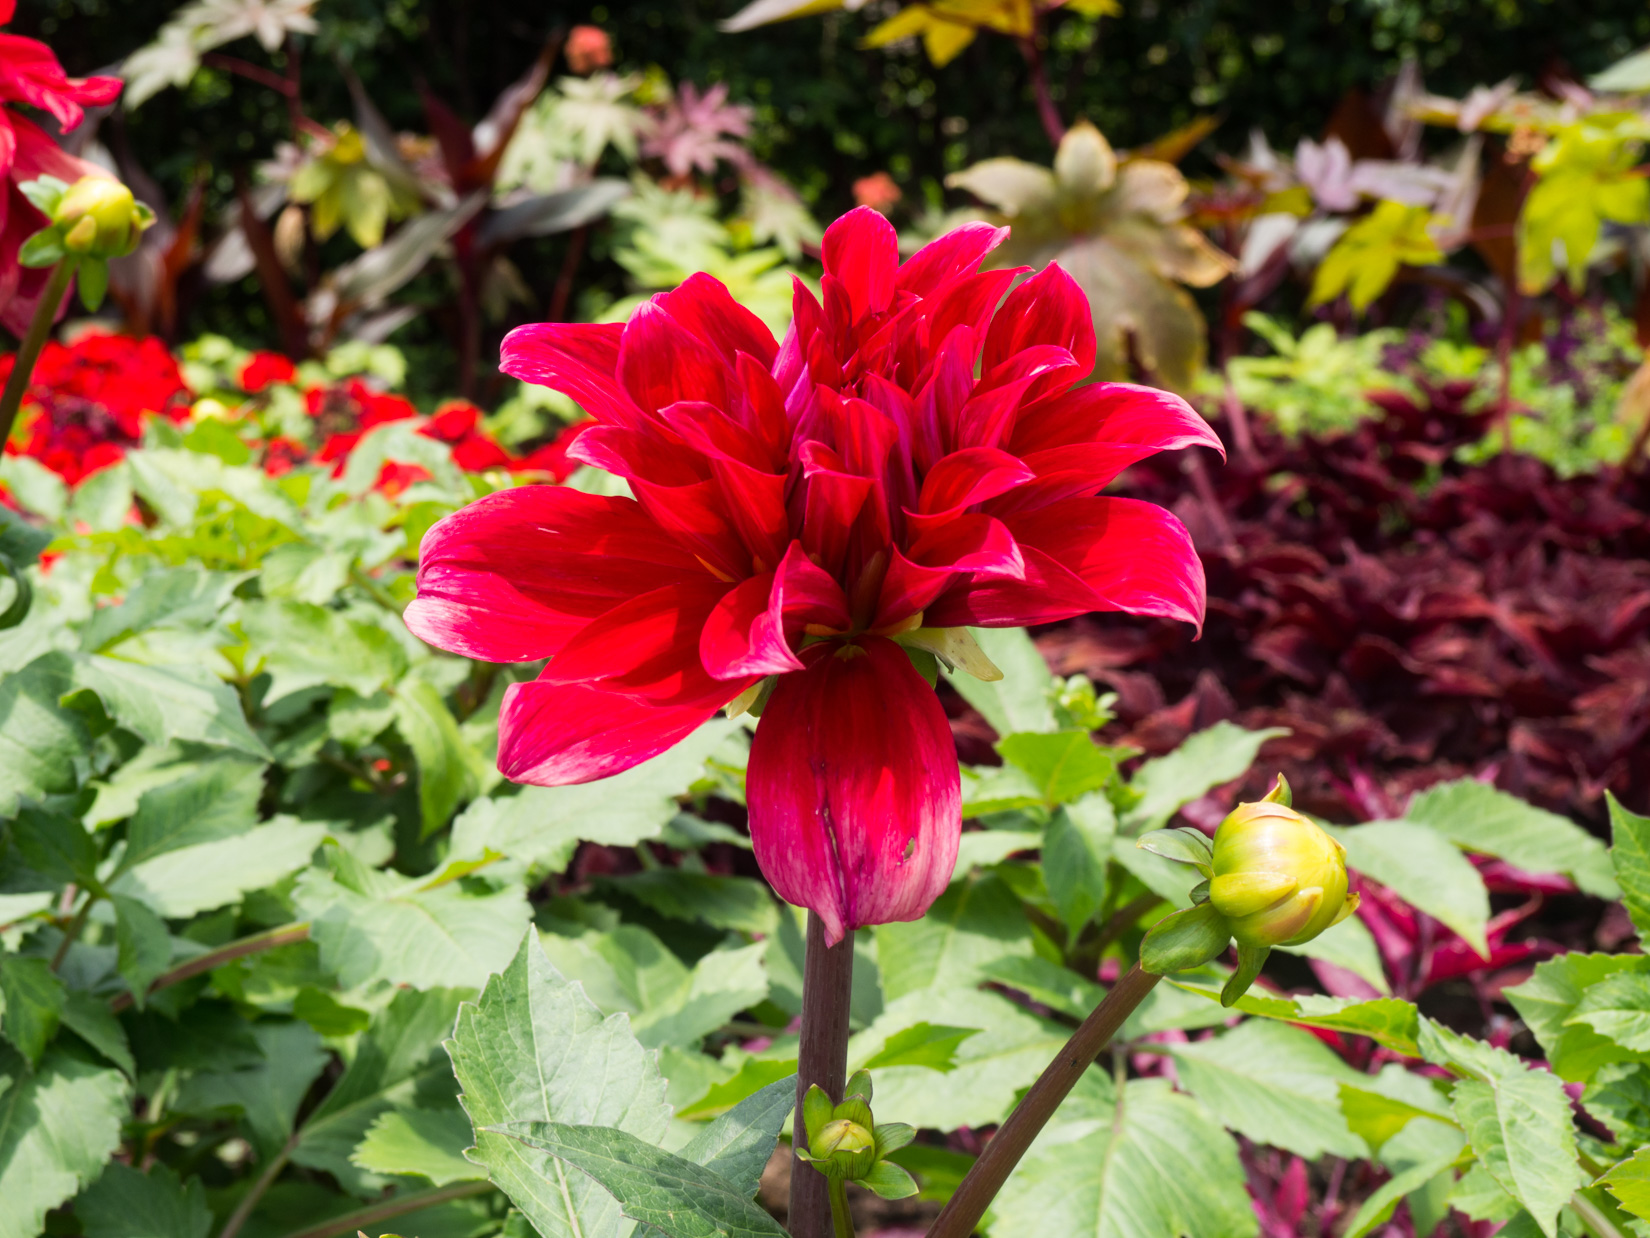 Red Flower in Garden – FOCA